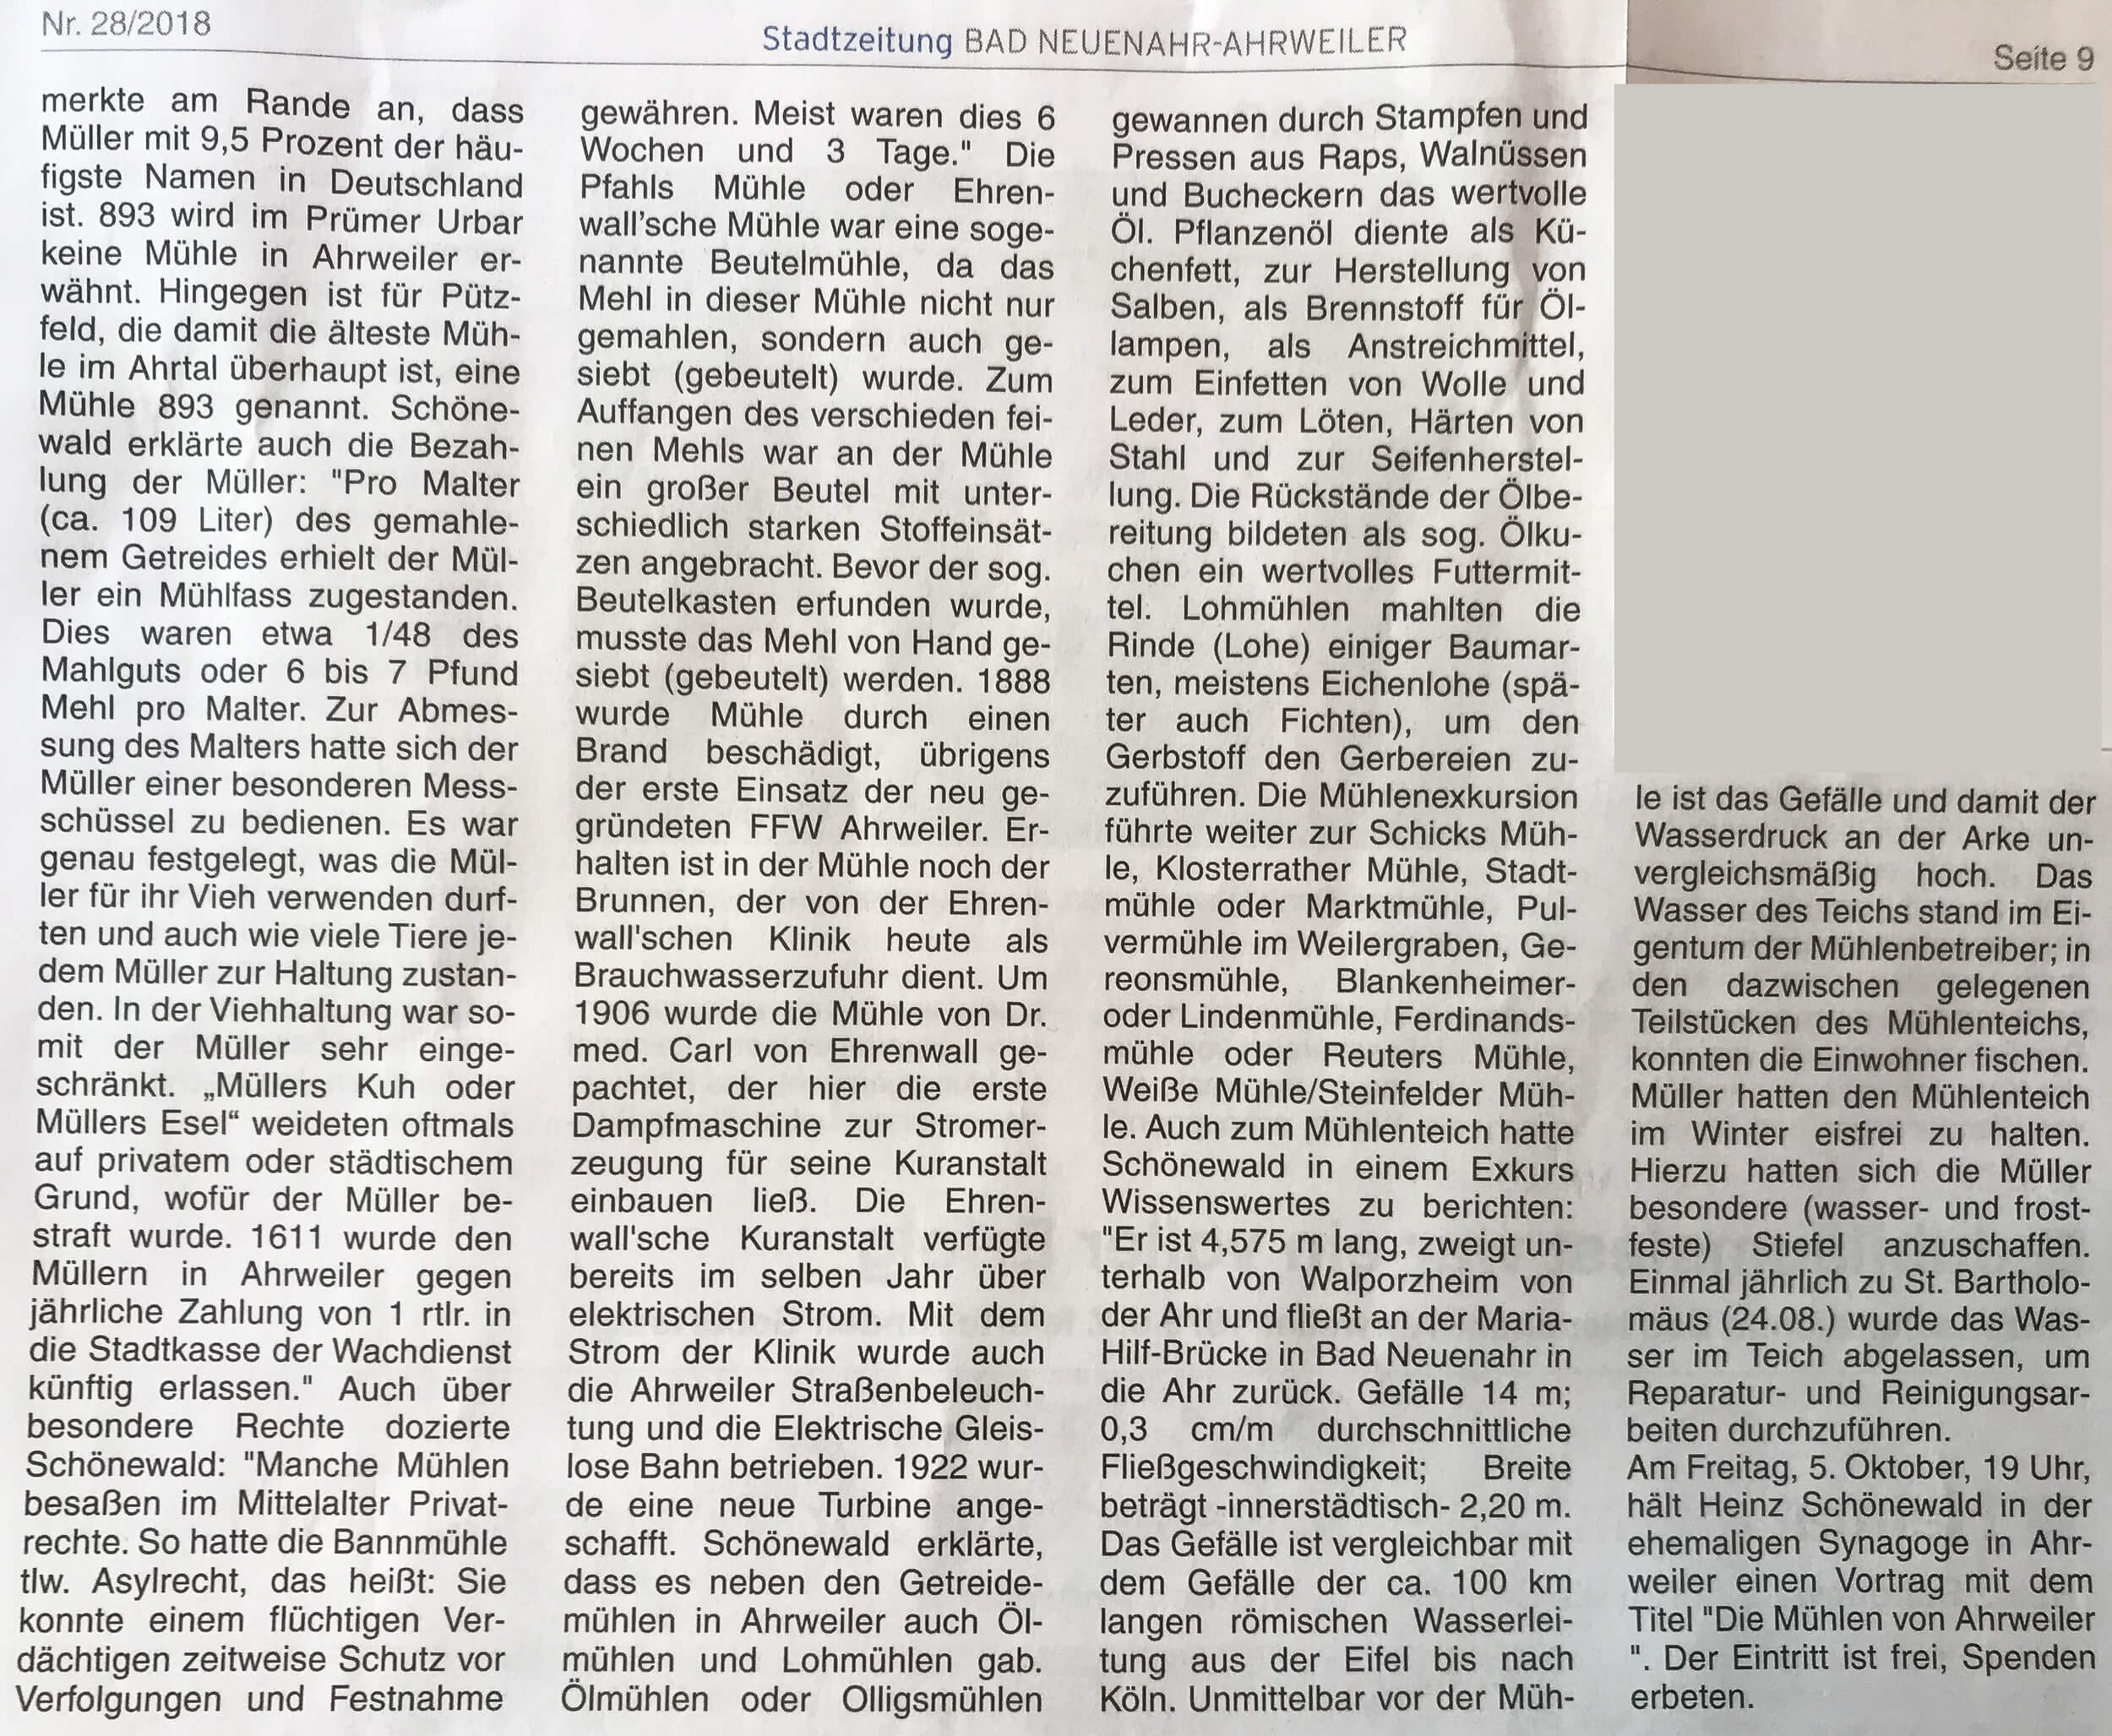 Mühlenwanderung entlang des Ahrweiler Mühlenteichs mit Heinz Schönewald Bericht der Stadtzeitung 28-2018 -Seite 2-